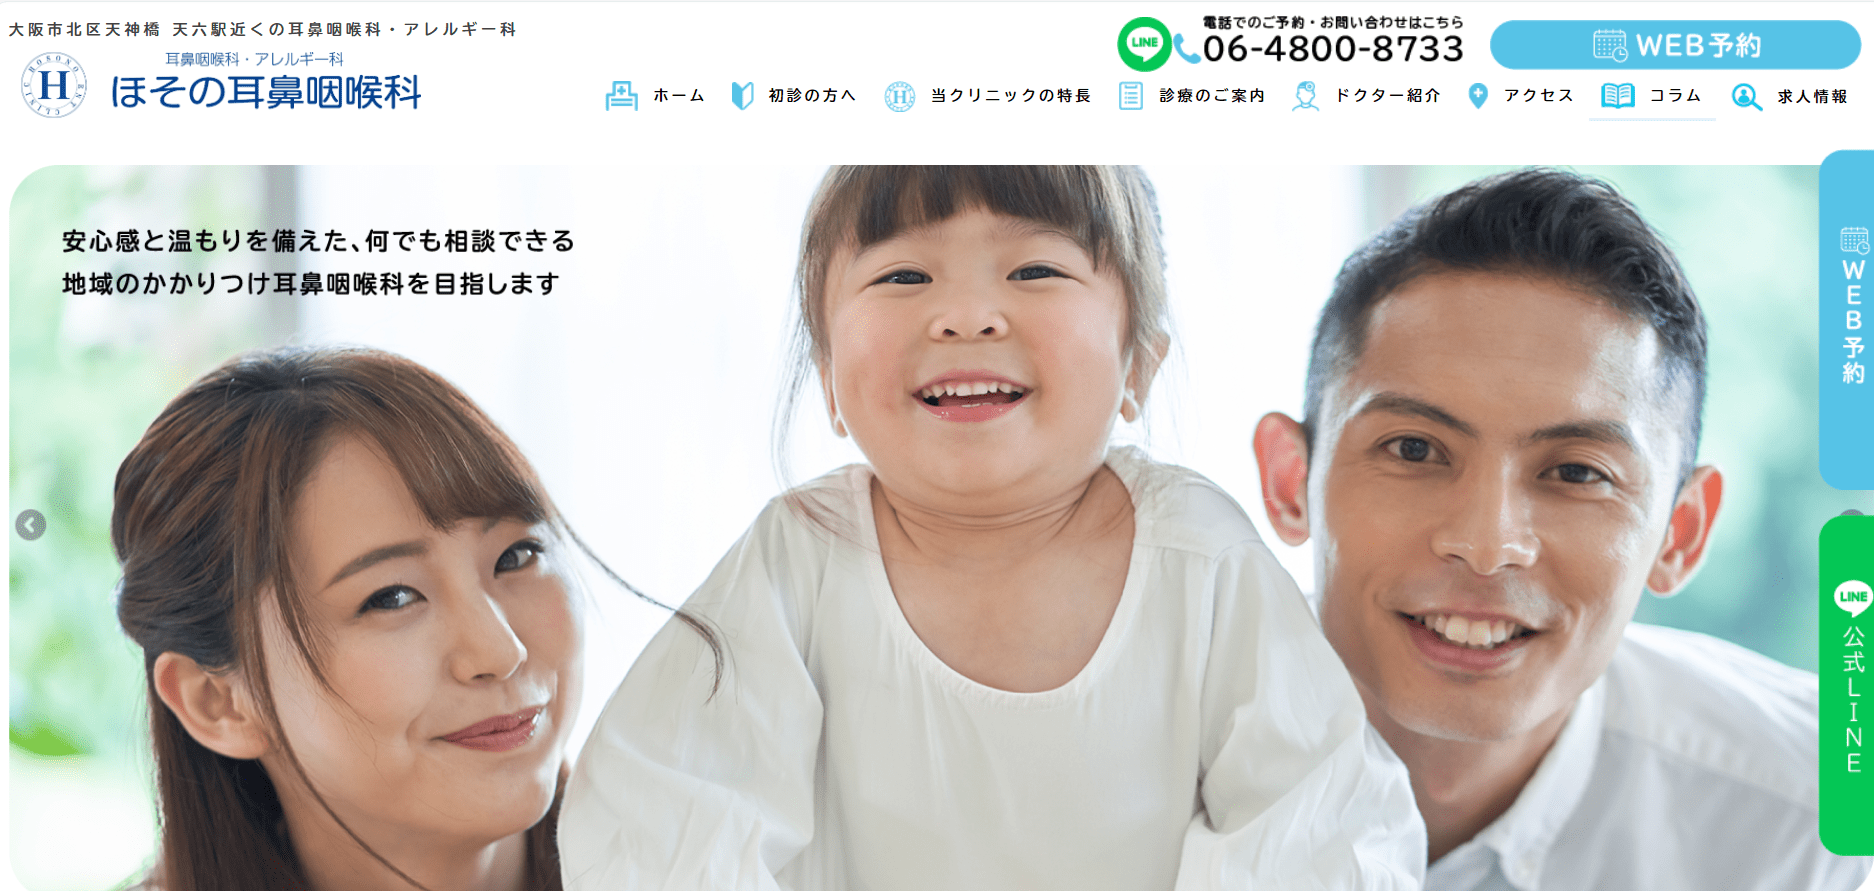 大阪市で評判の耳鼻咽喉科クリニック10選 ほその耳鼻咽喉科